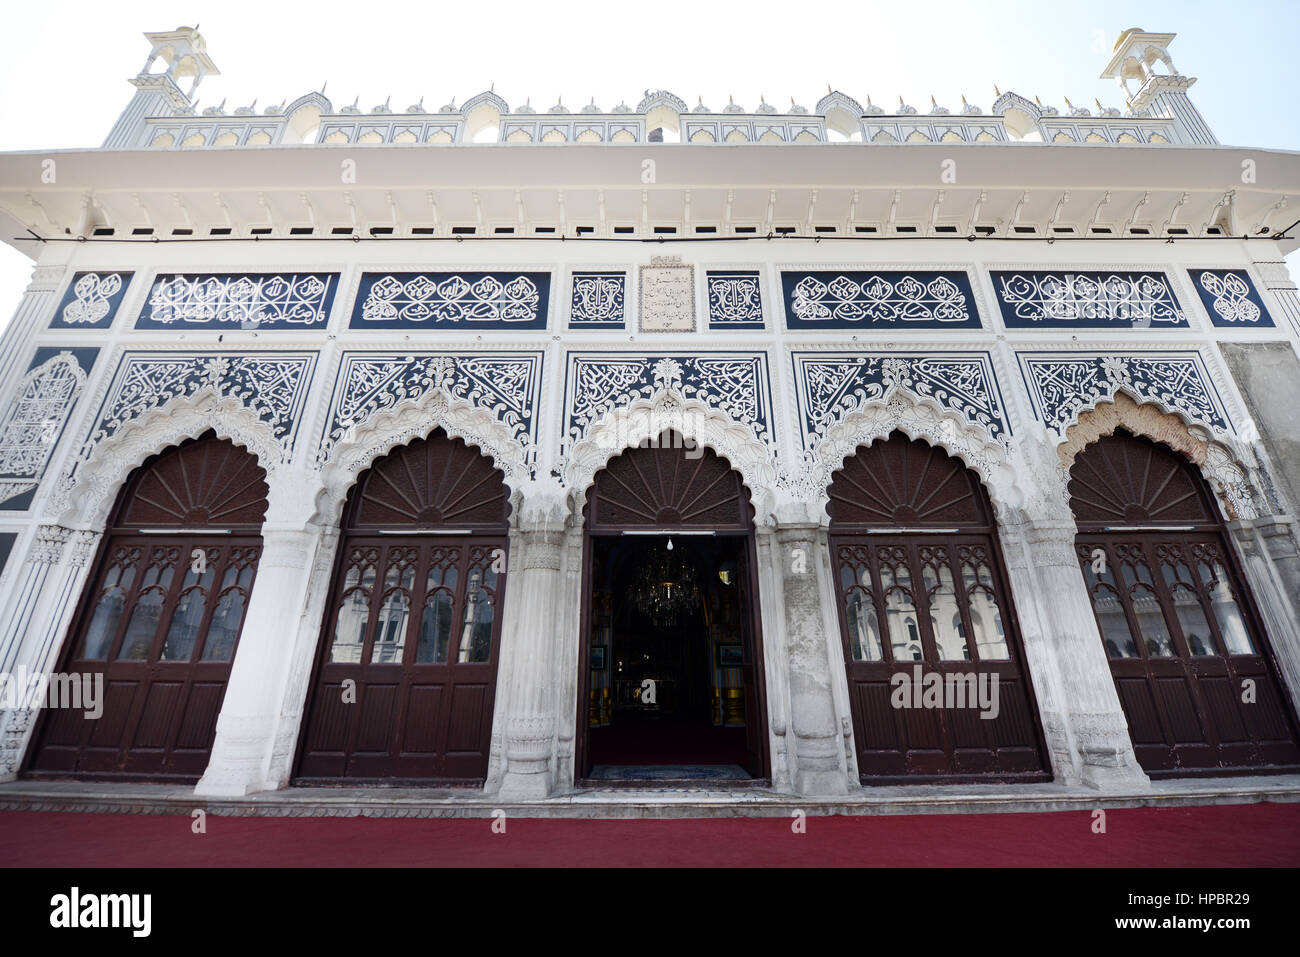 La bellissima Chota Imambara nella città di Lucknow, India. Foto Stock